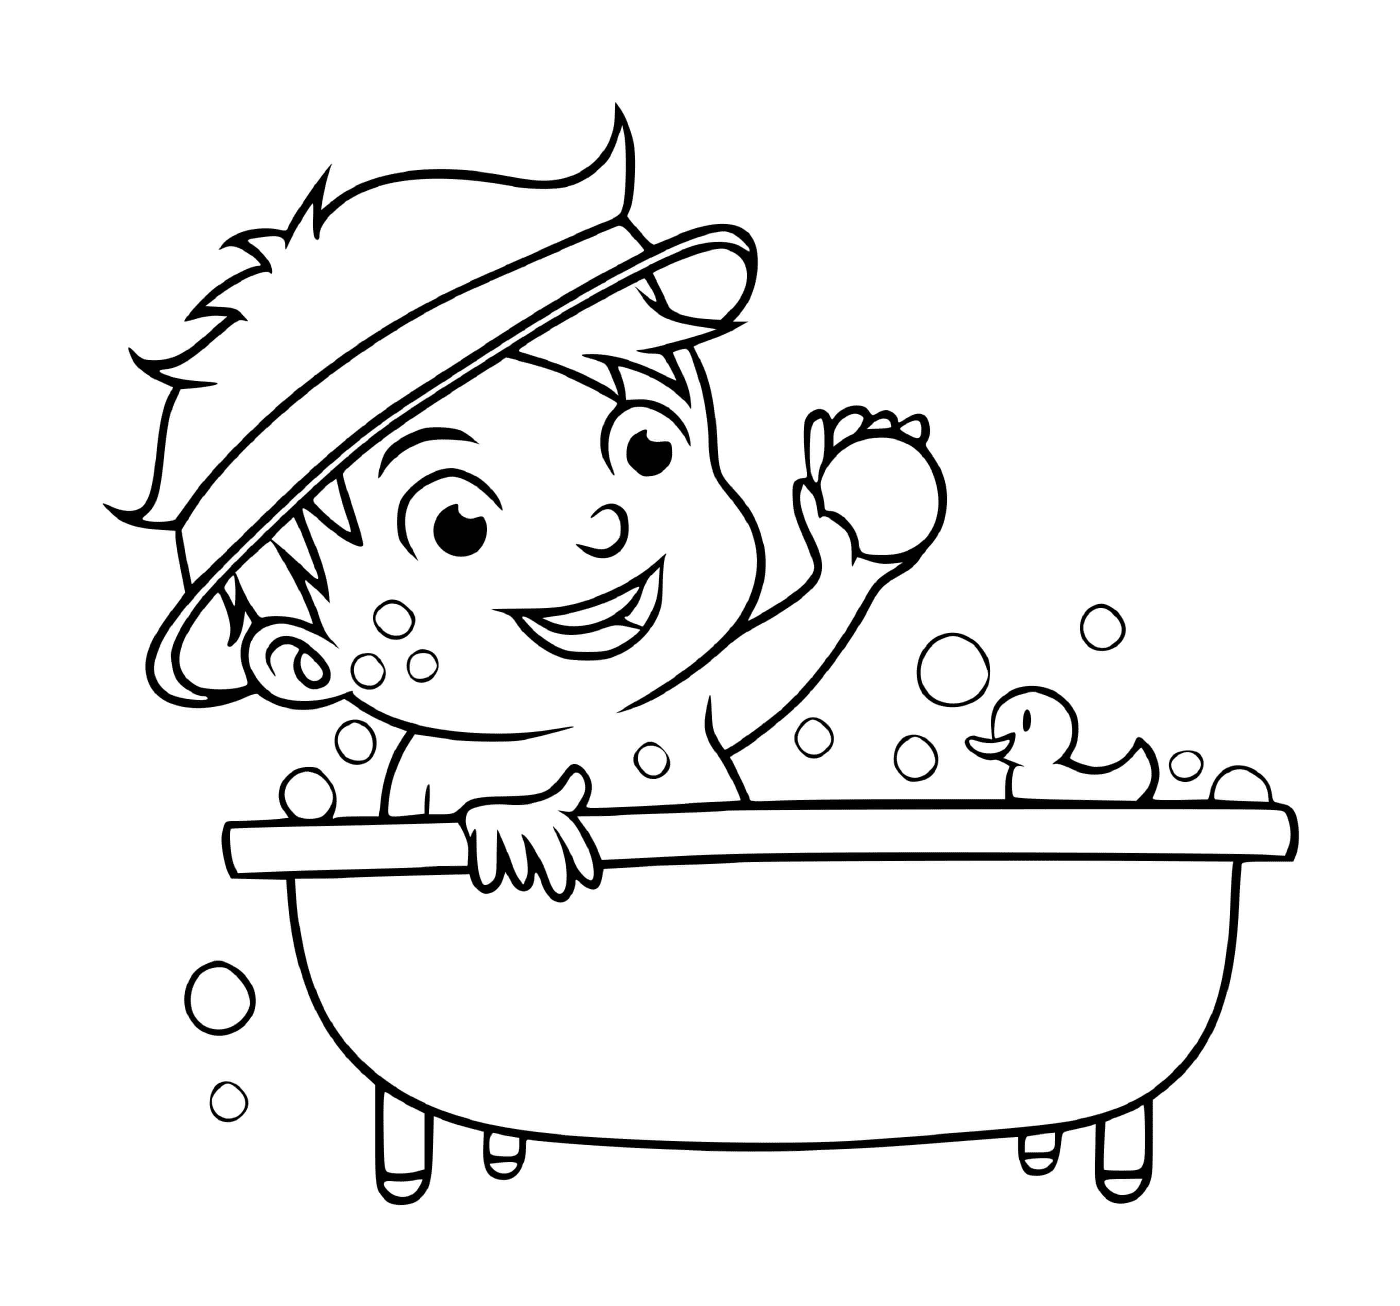  एक लड़का साफ रहने के लिए एक स्नान लेता है 